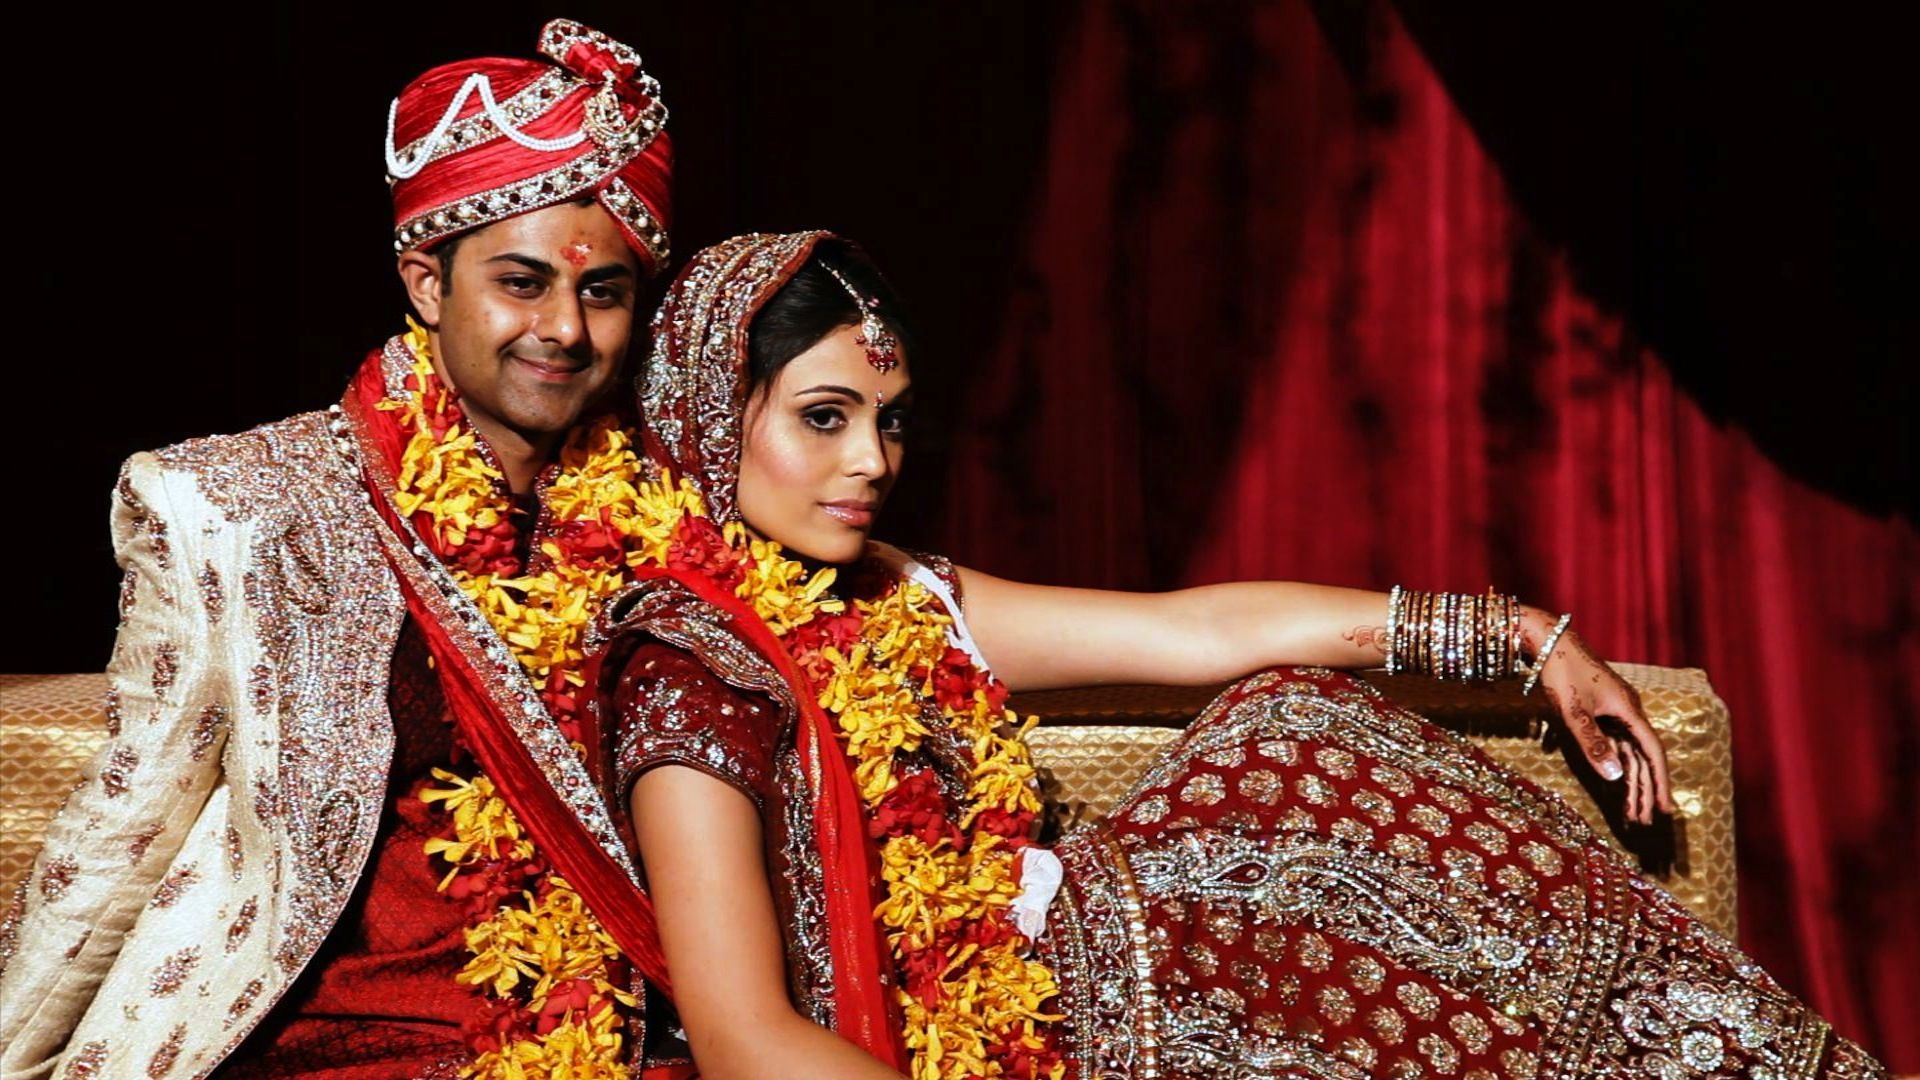 Indian Wedding Couple Wallpaper Free Indian Wedding Couple